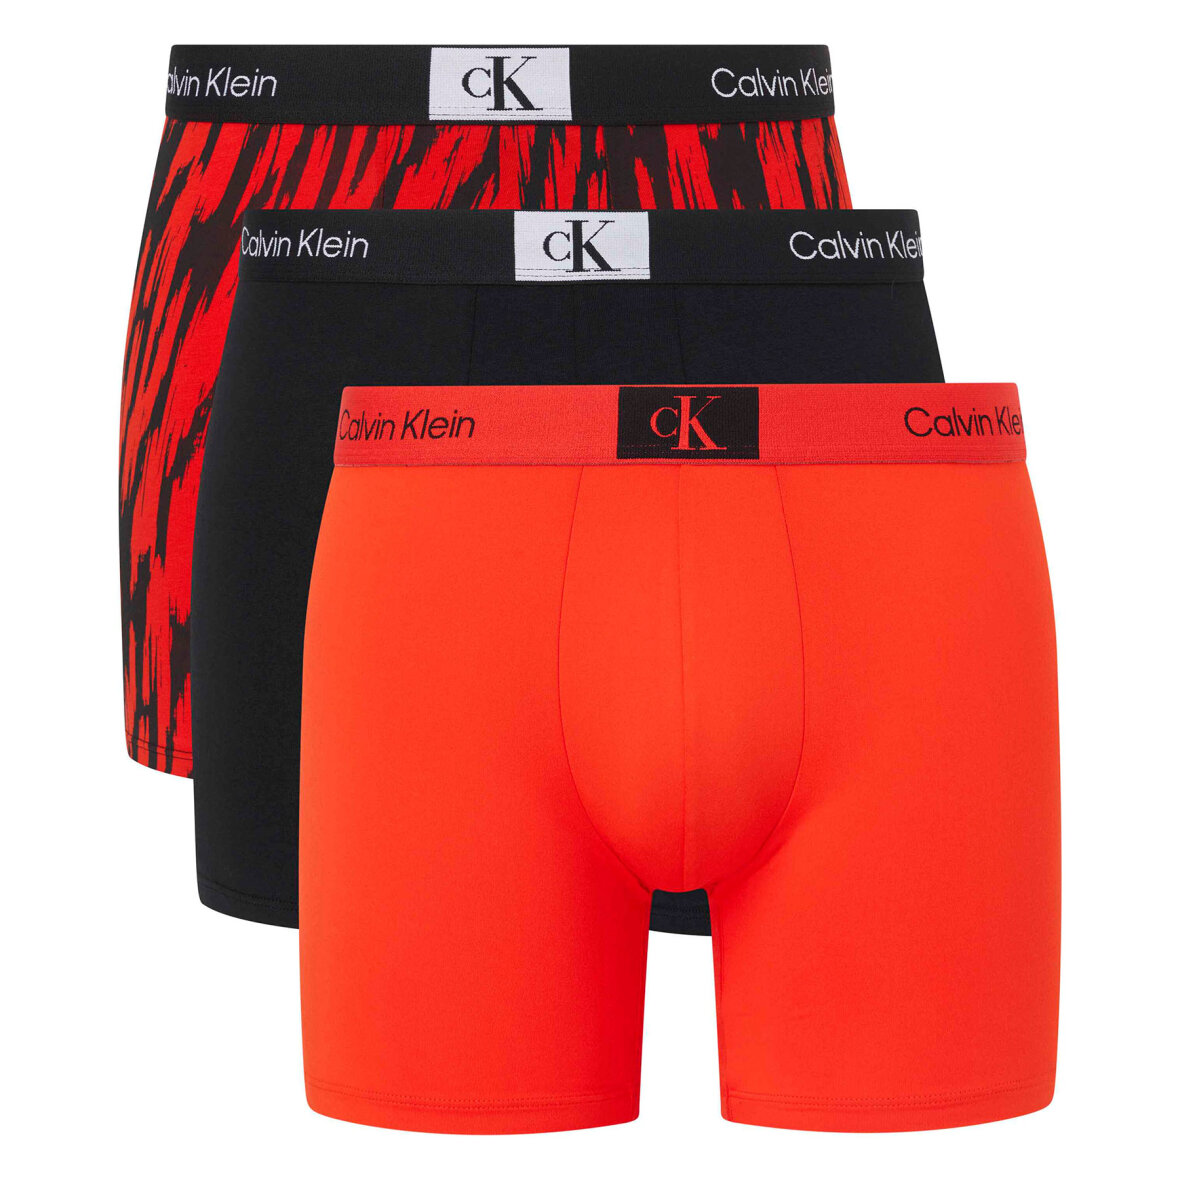 Trin køkken ortodoks Køb Calvin Klein Underwear Boxer brief 3pk idag. Vi leverer på 1-2 dage